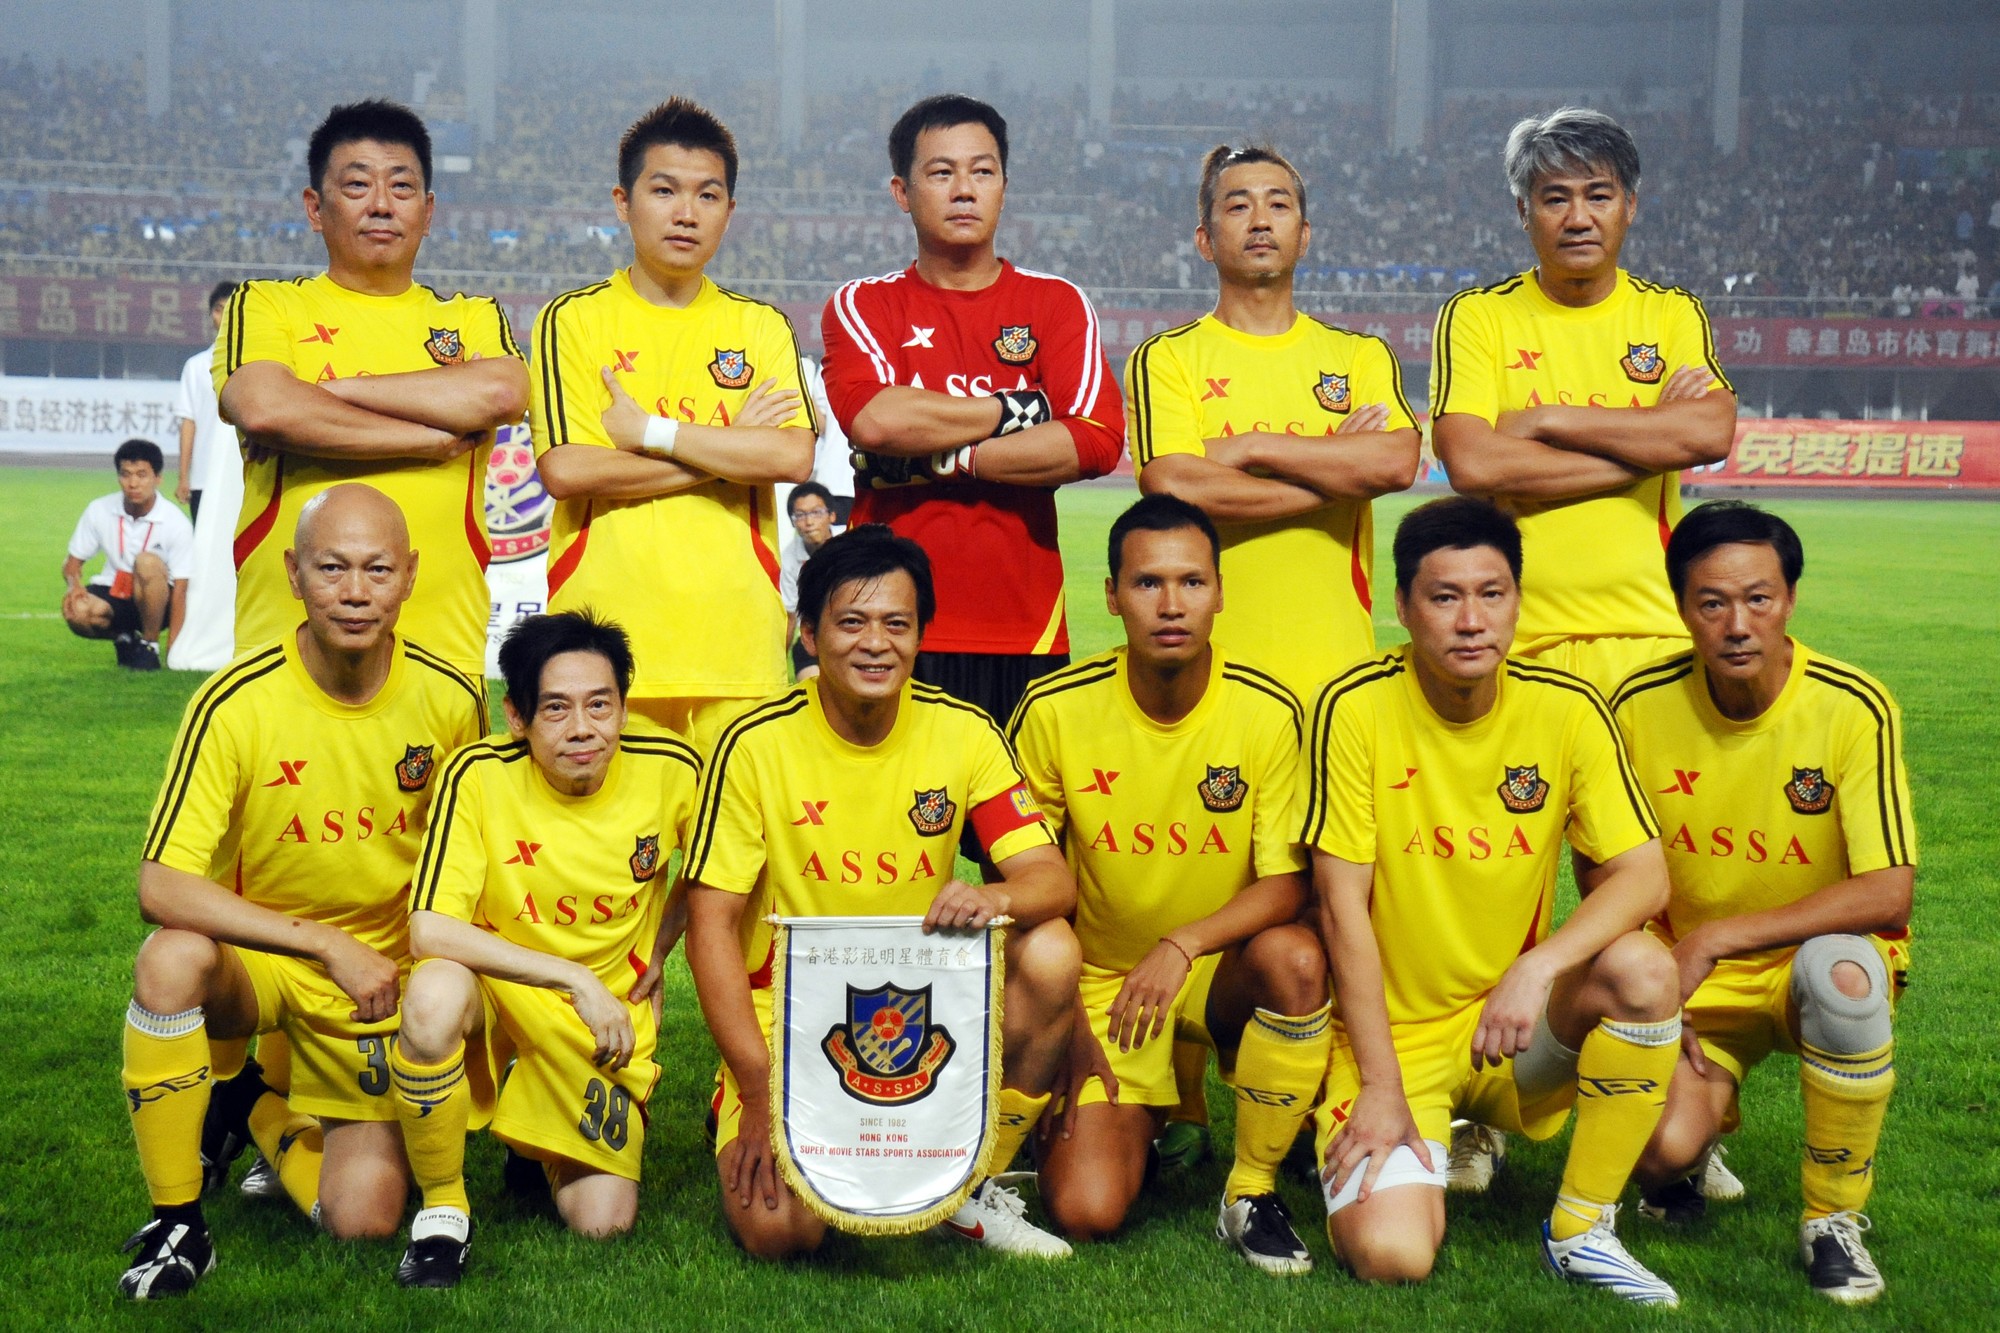 为爱闪耀33载,香港明星足球队再度吹响爱的集结号